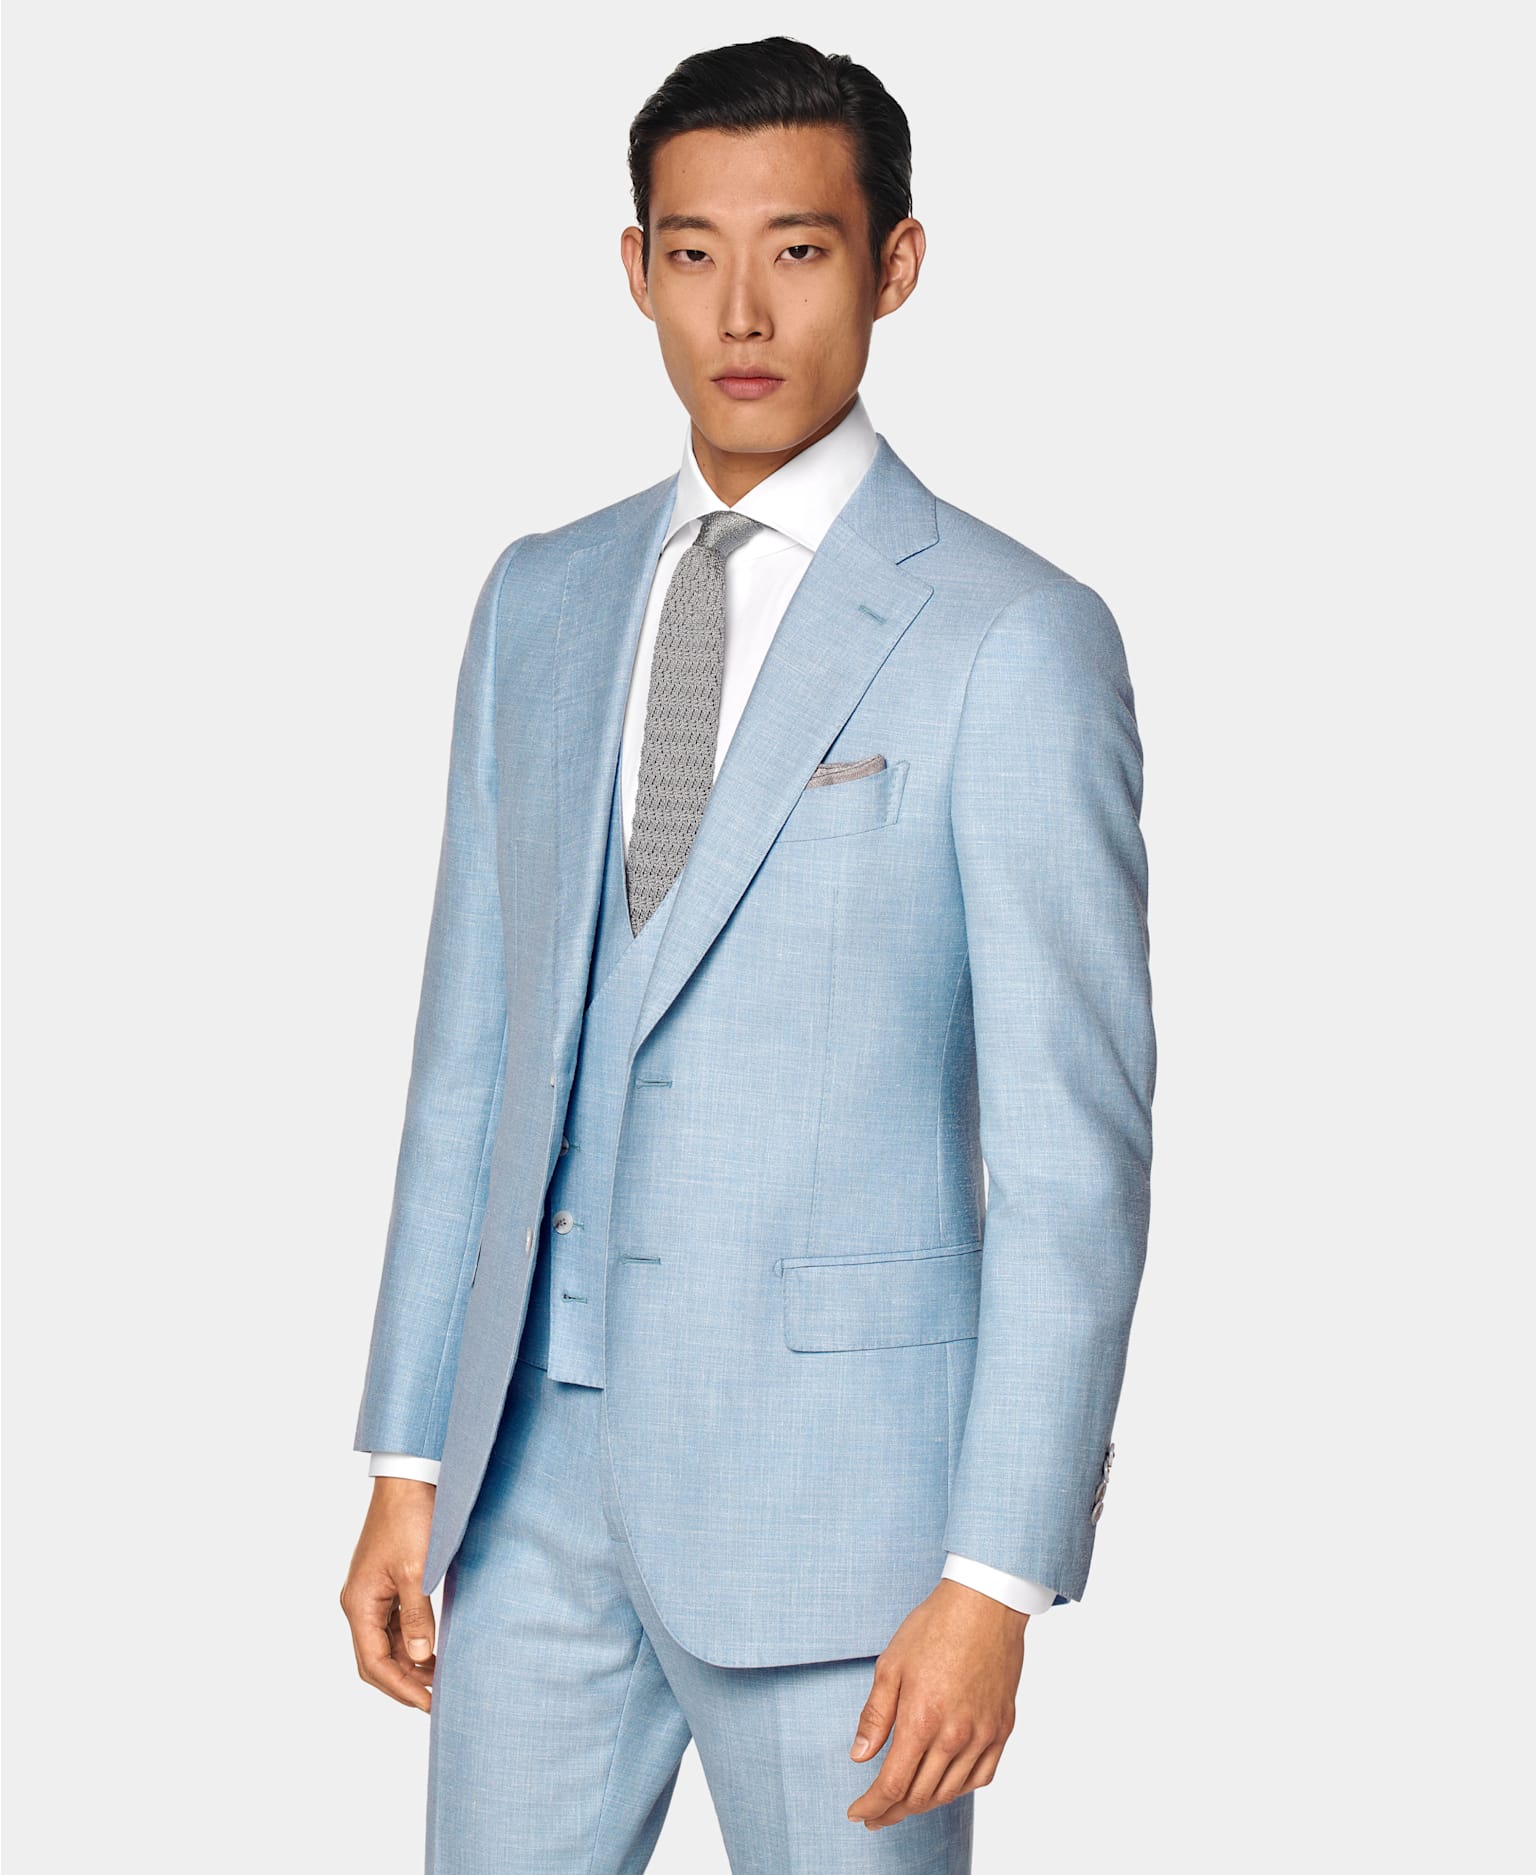 Jasnoniebieski trzyczęściowy garnitur zestawiony z białą koszulą i szarym dzianinowym krawatem.